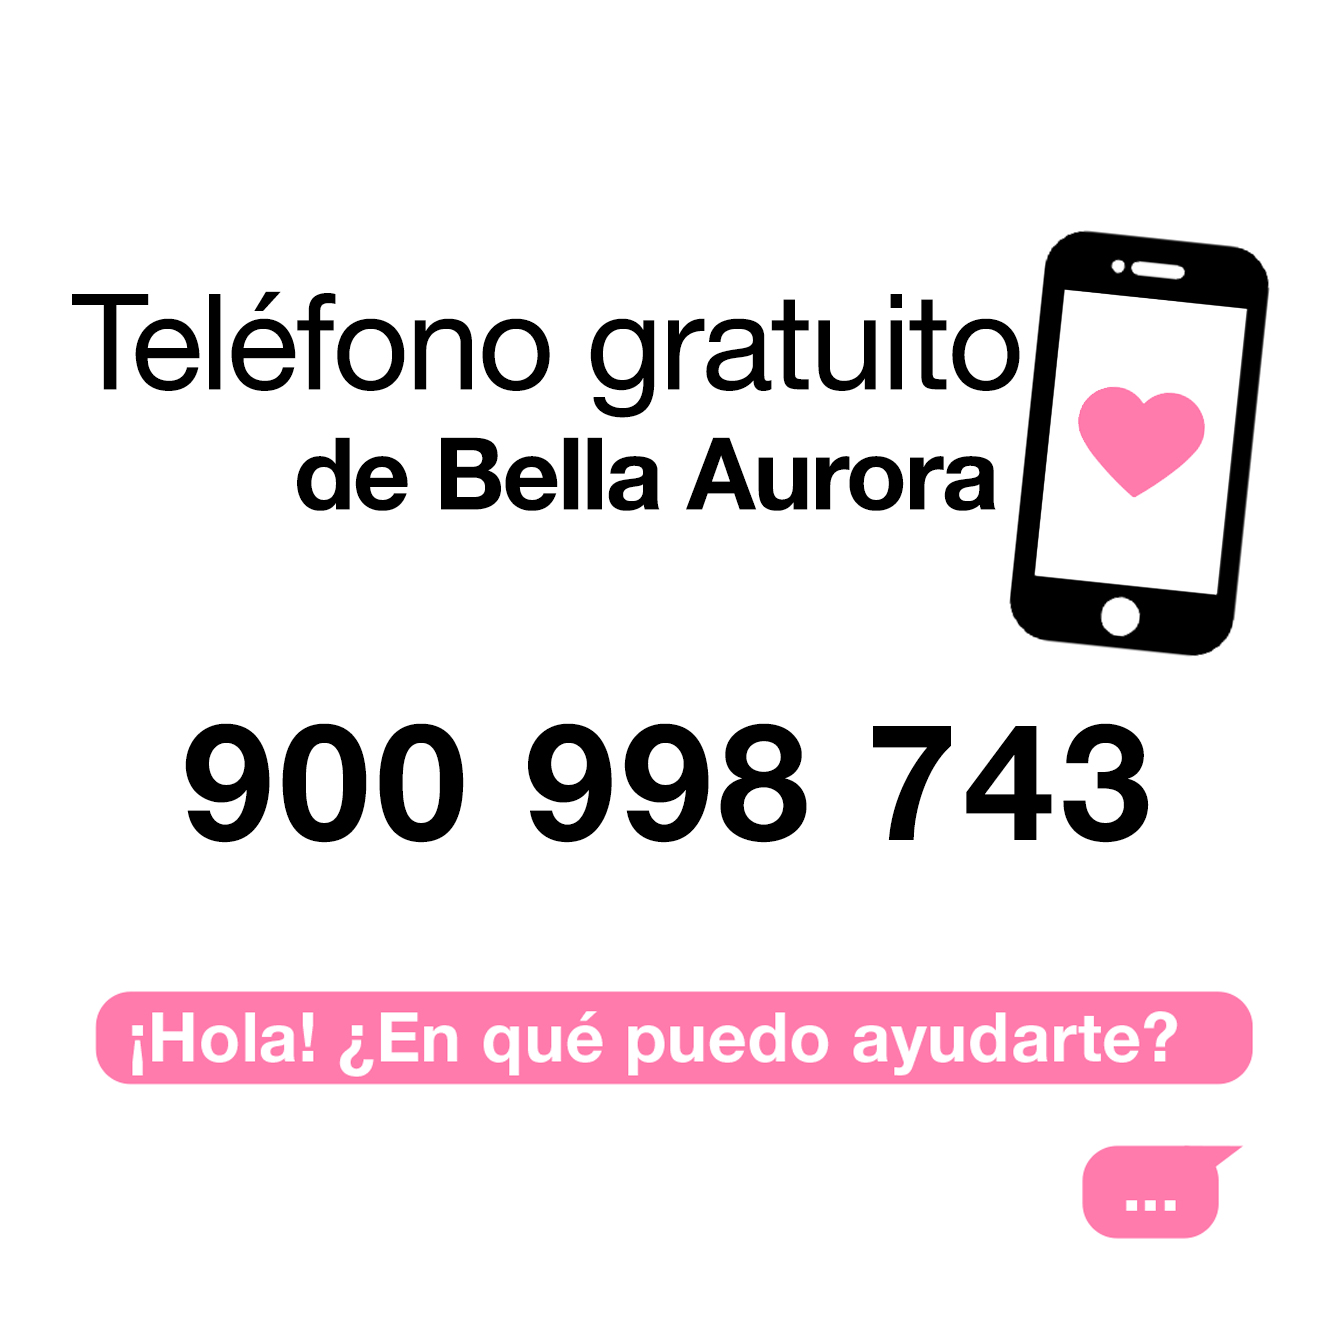 Nuevo servicio de asesoramiento telefónico gratuito de Bella Aurora